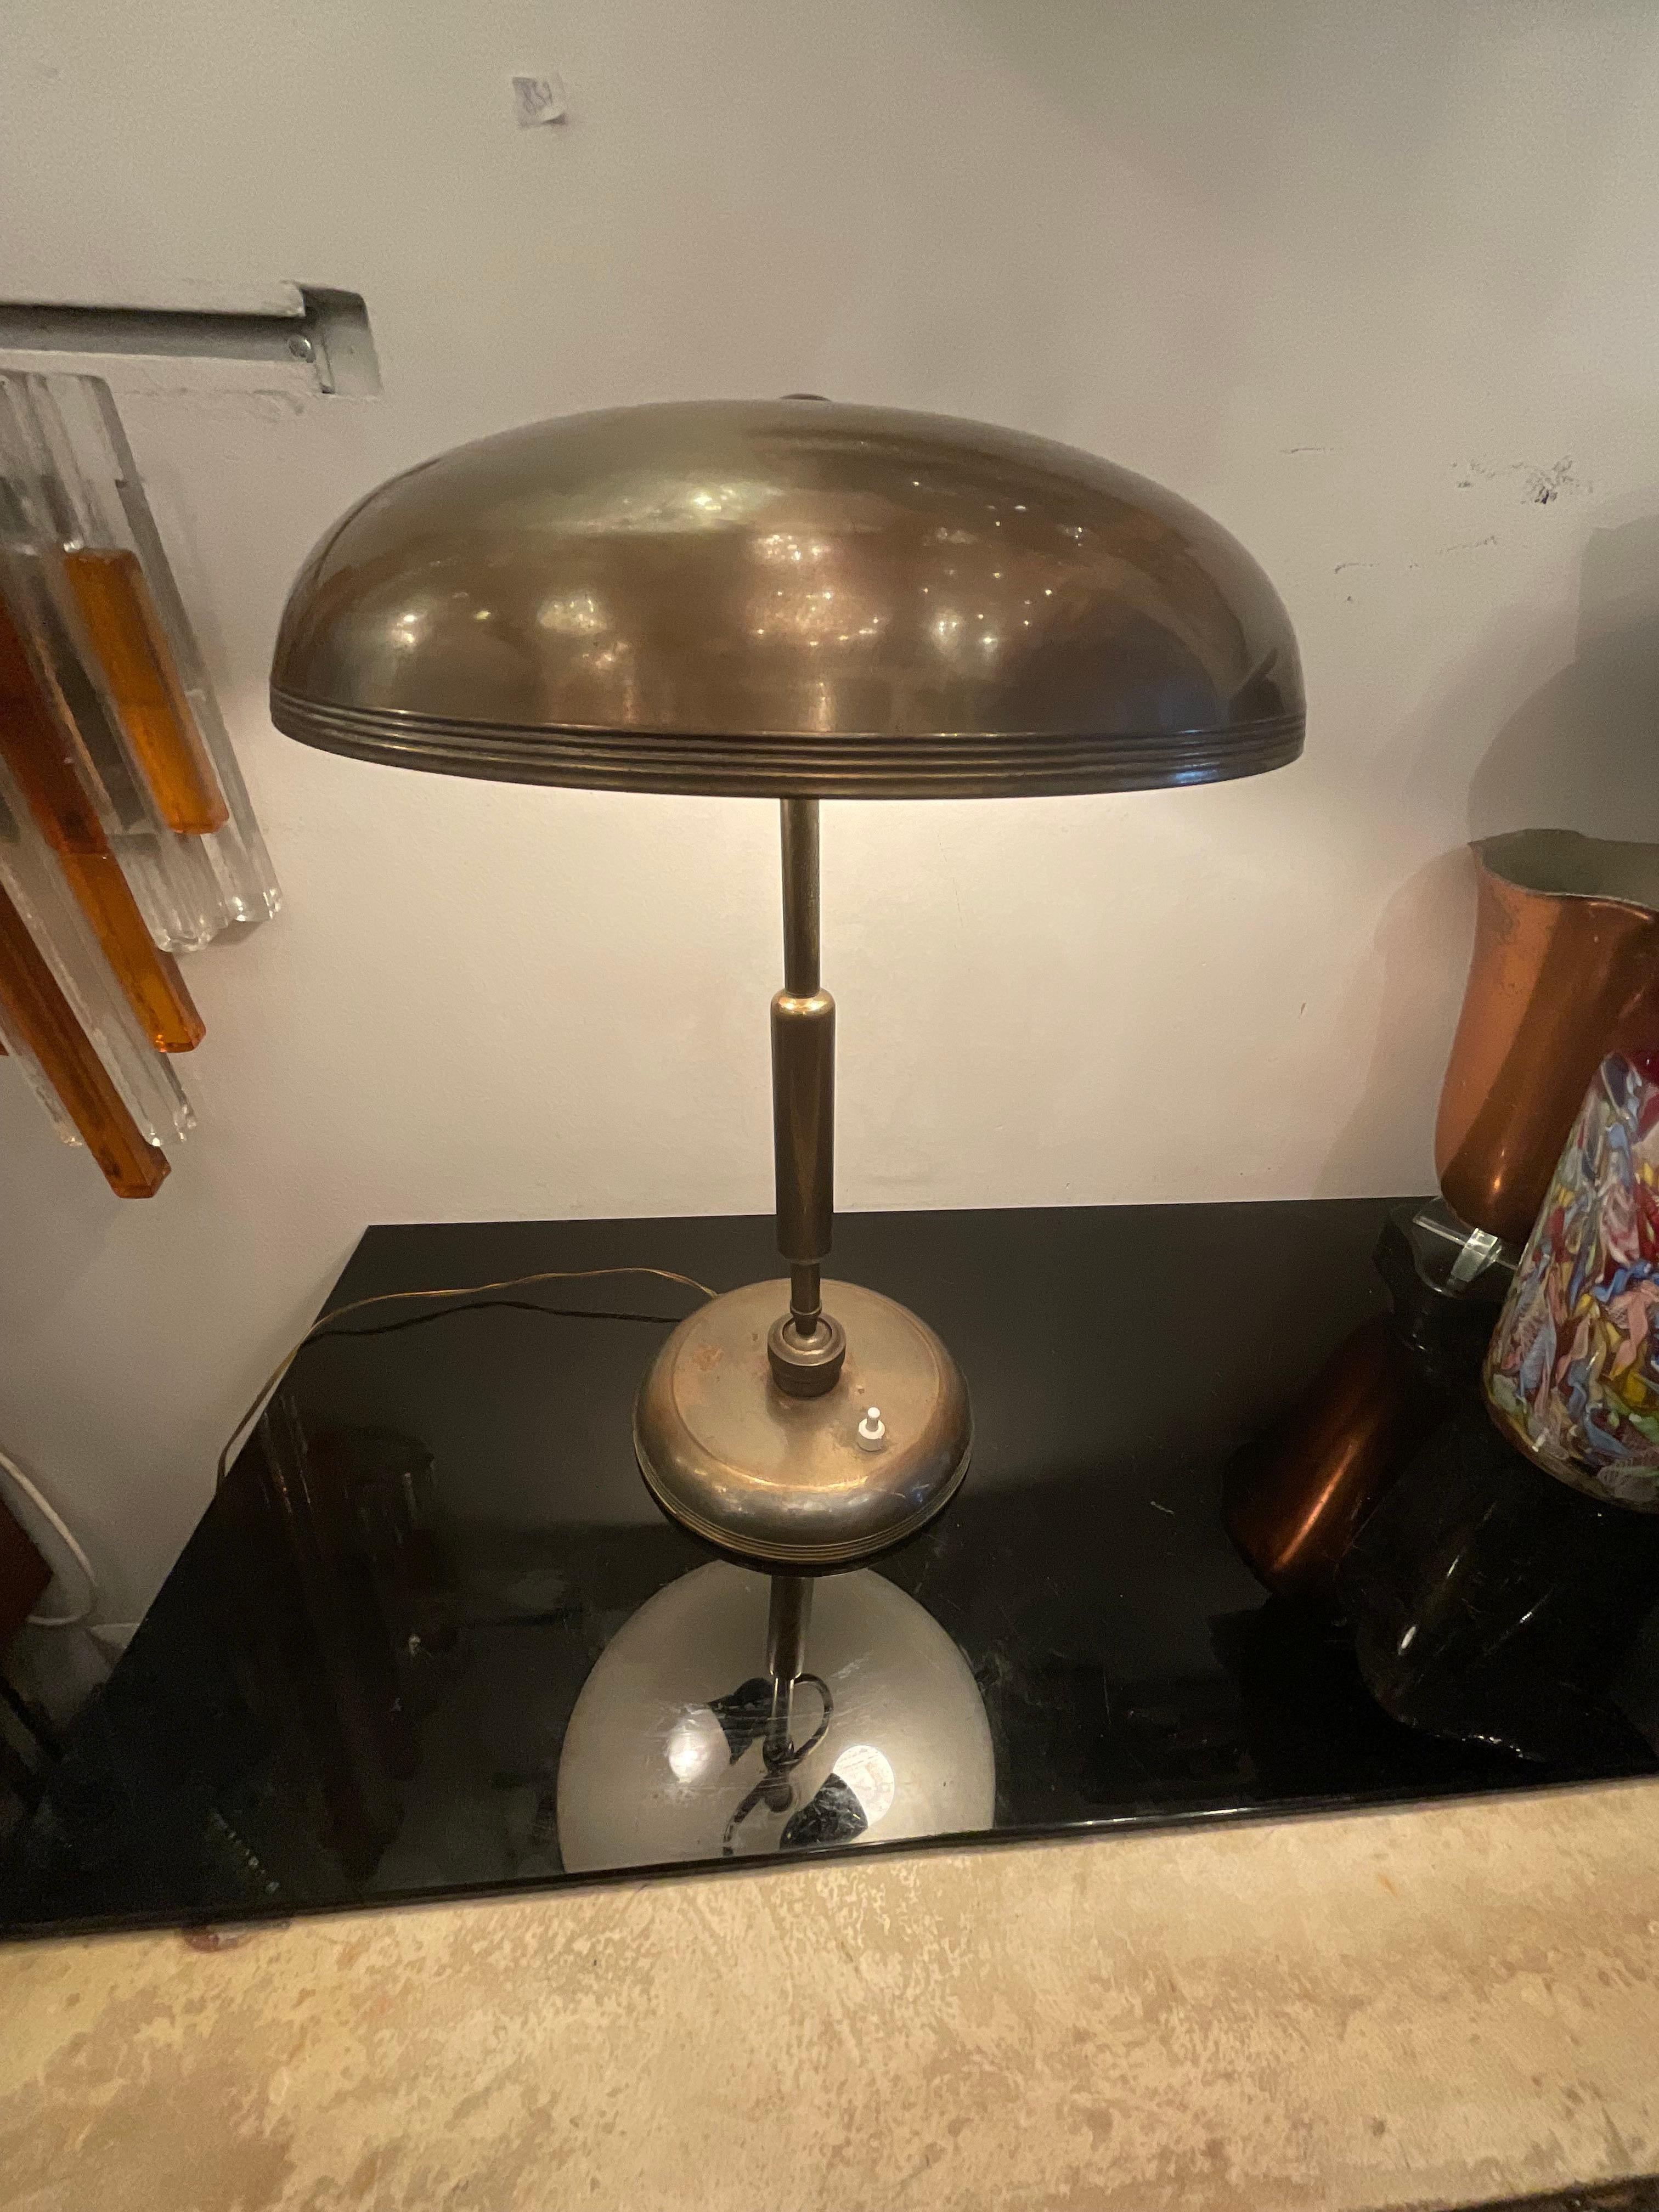 Une lampe originale conçue par Oscar Torlasco, produite par Lumi à Milan dans les années 50.
Une lampe étudiée dans tous ses détails en termes d'élégance et de fonctionnalité, a diverses positions pour faire arriver la lumière là où elle le